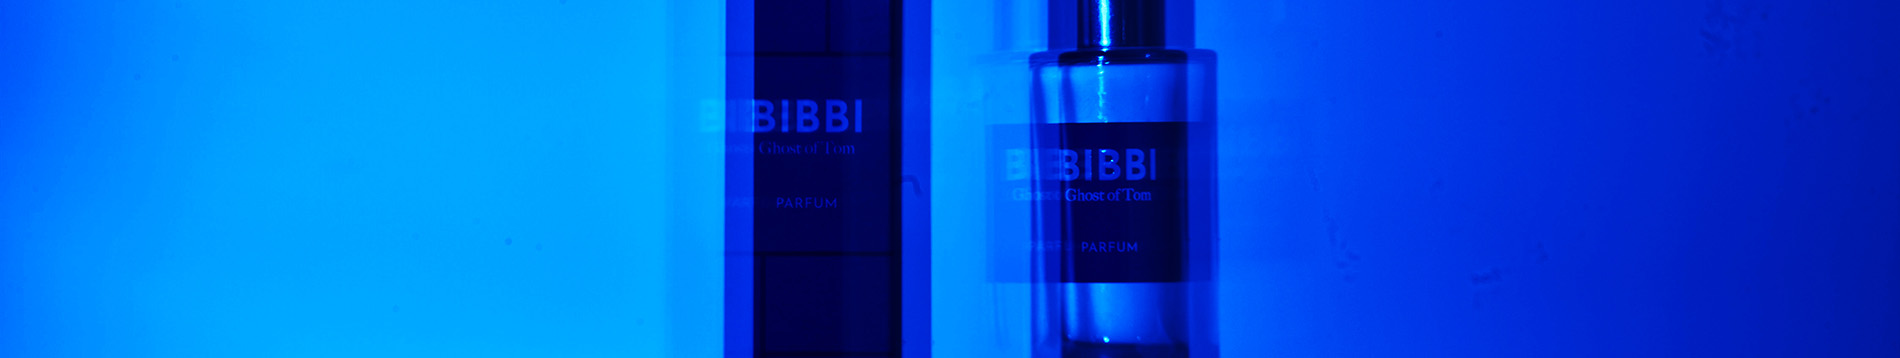 Bibbi Parfum